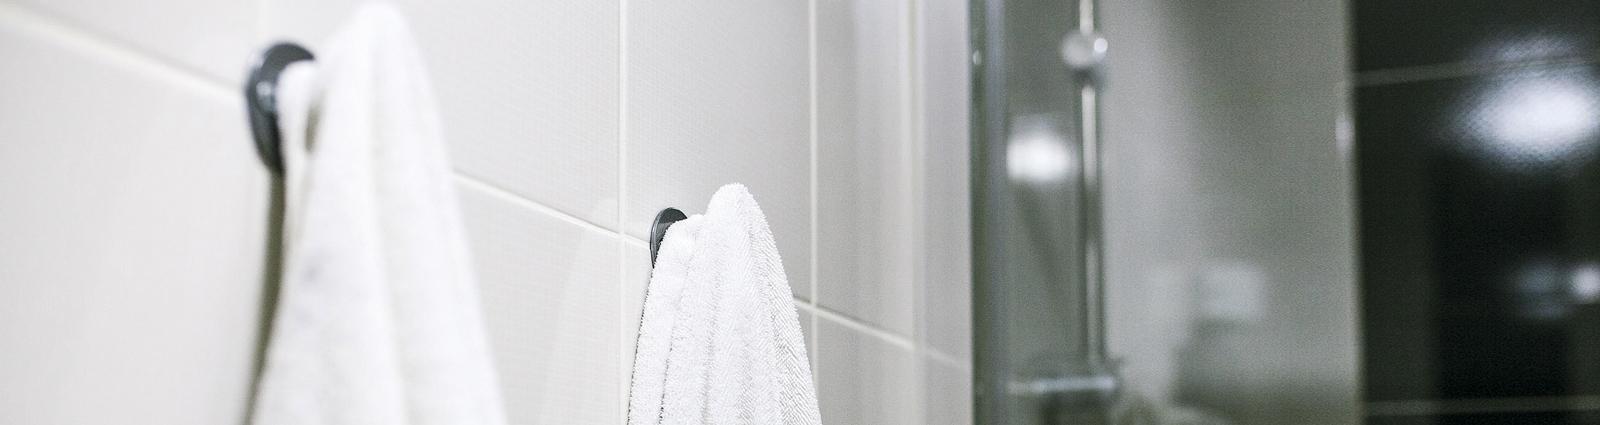 HOTEL MEGASTORE est un grossiste multi-spécialiste en matière d'équipements et d'accessoires pour douches et baignoires de chambres d'hôtel (barres de douche, parois et rideaux de douche, économiseurs d'eau...). Un projet de rénovation de salle de bain ou un simple remplacement de matériel pour votre douche ou baignoire ?